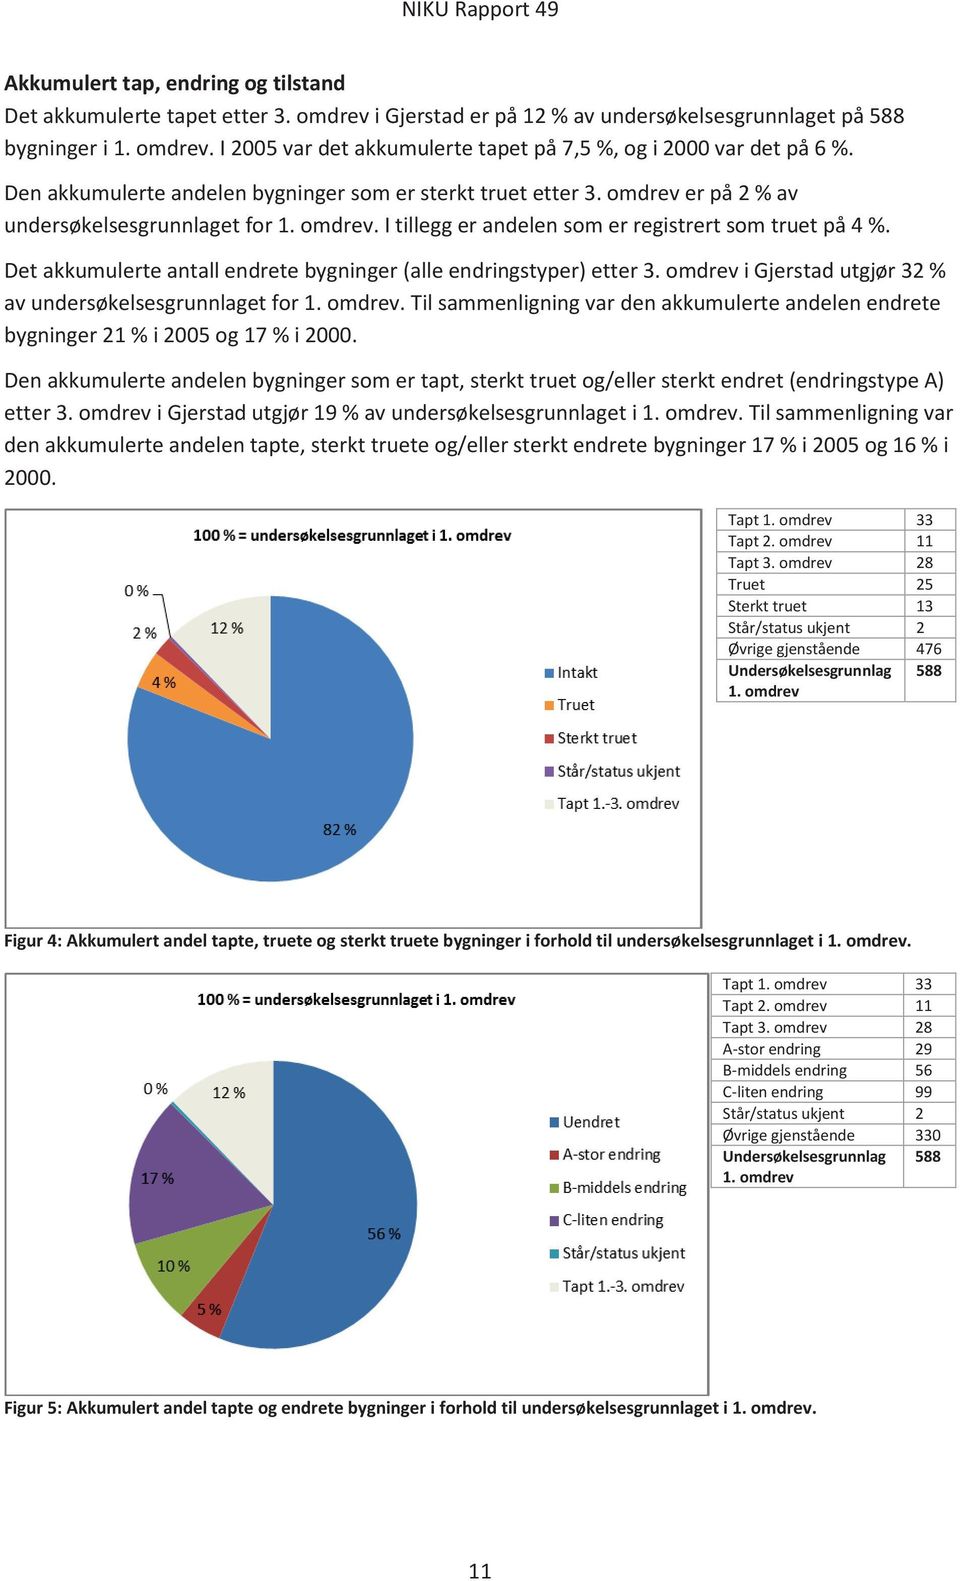 Det akkumulerte antall endrete bygninger (alle endringstyper) etter 3. omdrev i Gjerstad utgjør 32 % av undersøkelsesgrunnlaget for 1. omdrev. Til sammenligning var den akkumulerte andelen endrete bygninger 21 % i 2005 og 17 % i 2000.